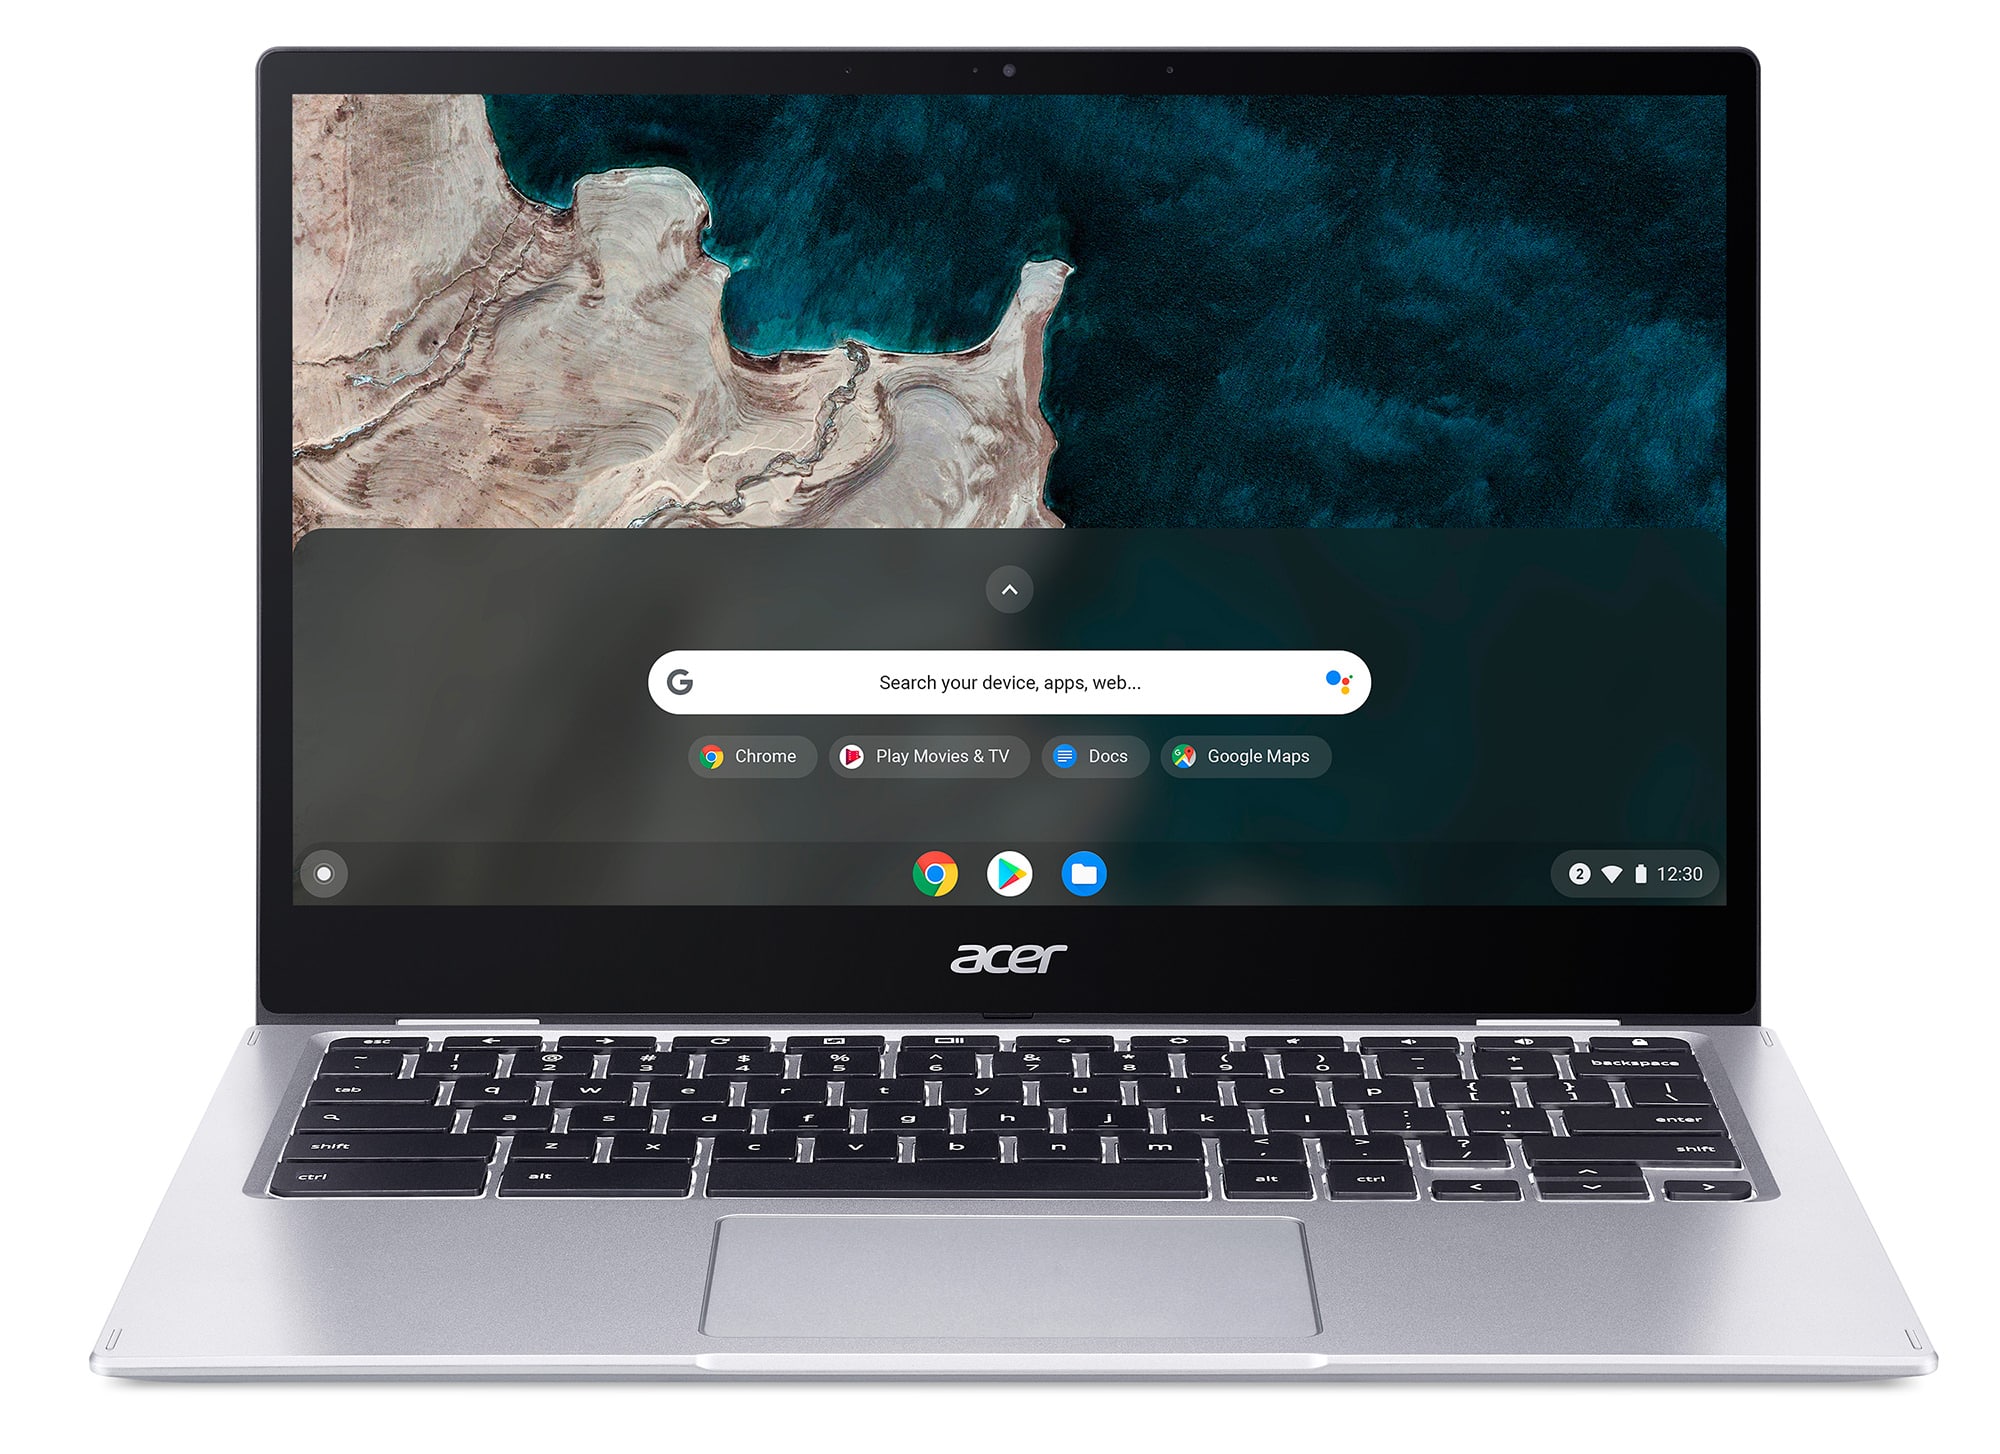 Acer lần đầu công bố Chromebook trang bị chip Qualcomm Snapdragon 7c với thiết kế siêu di động, hỗ trợ 4G LTE